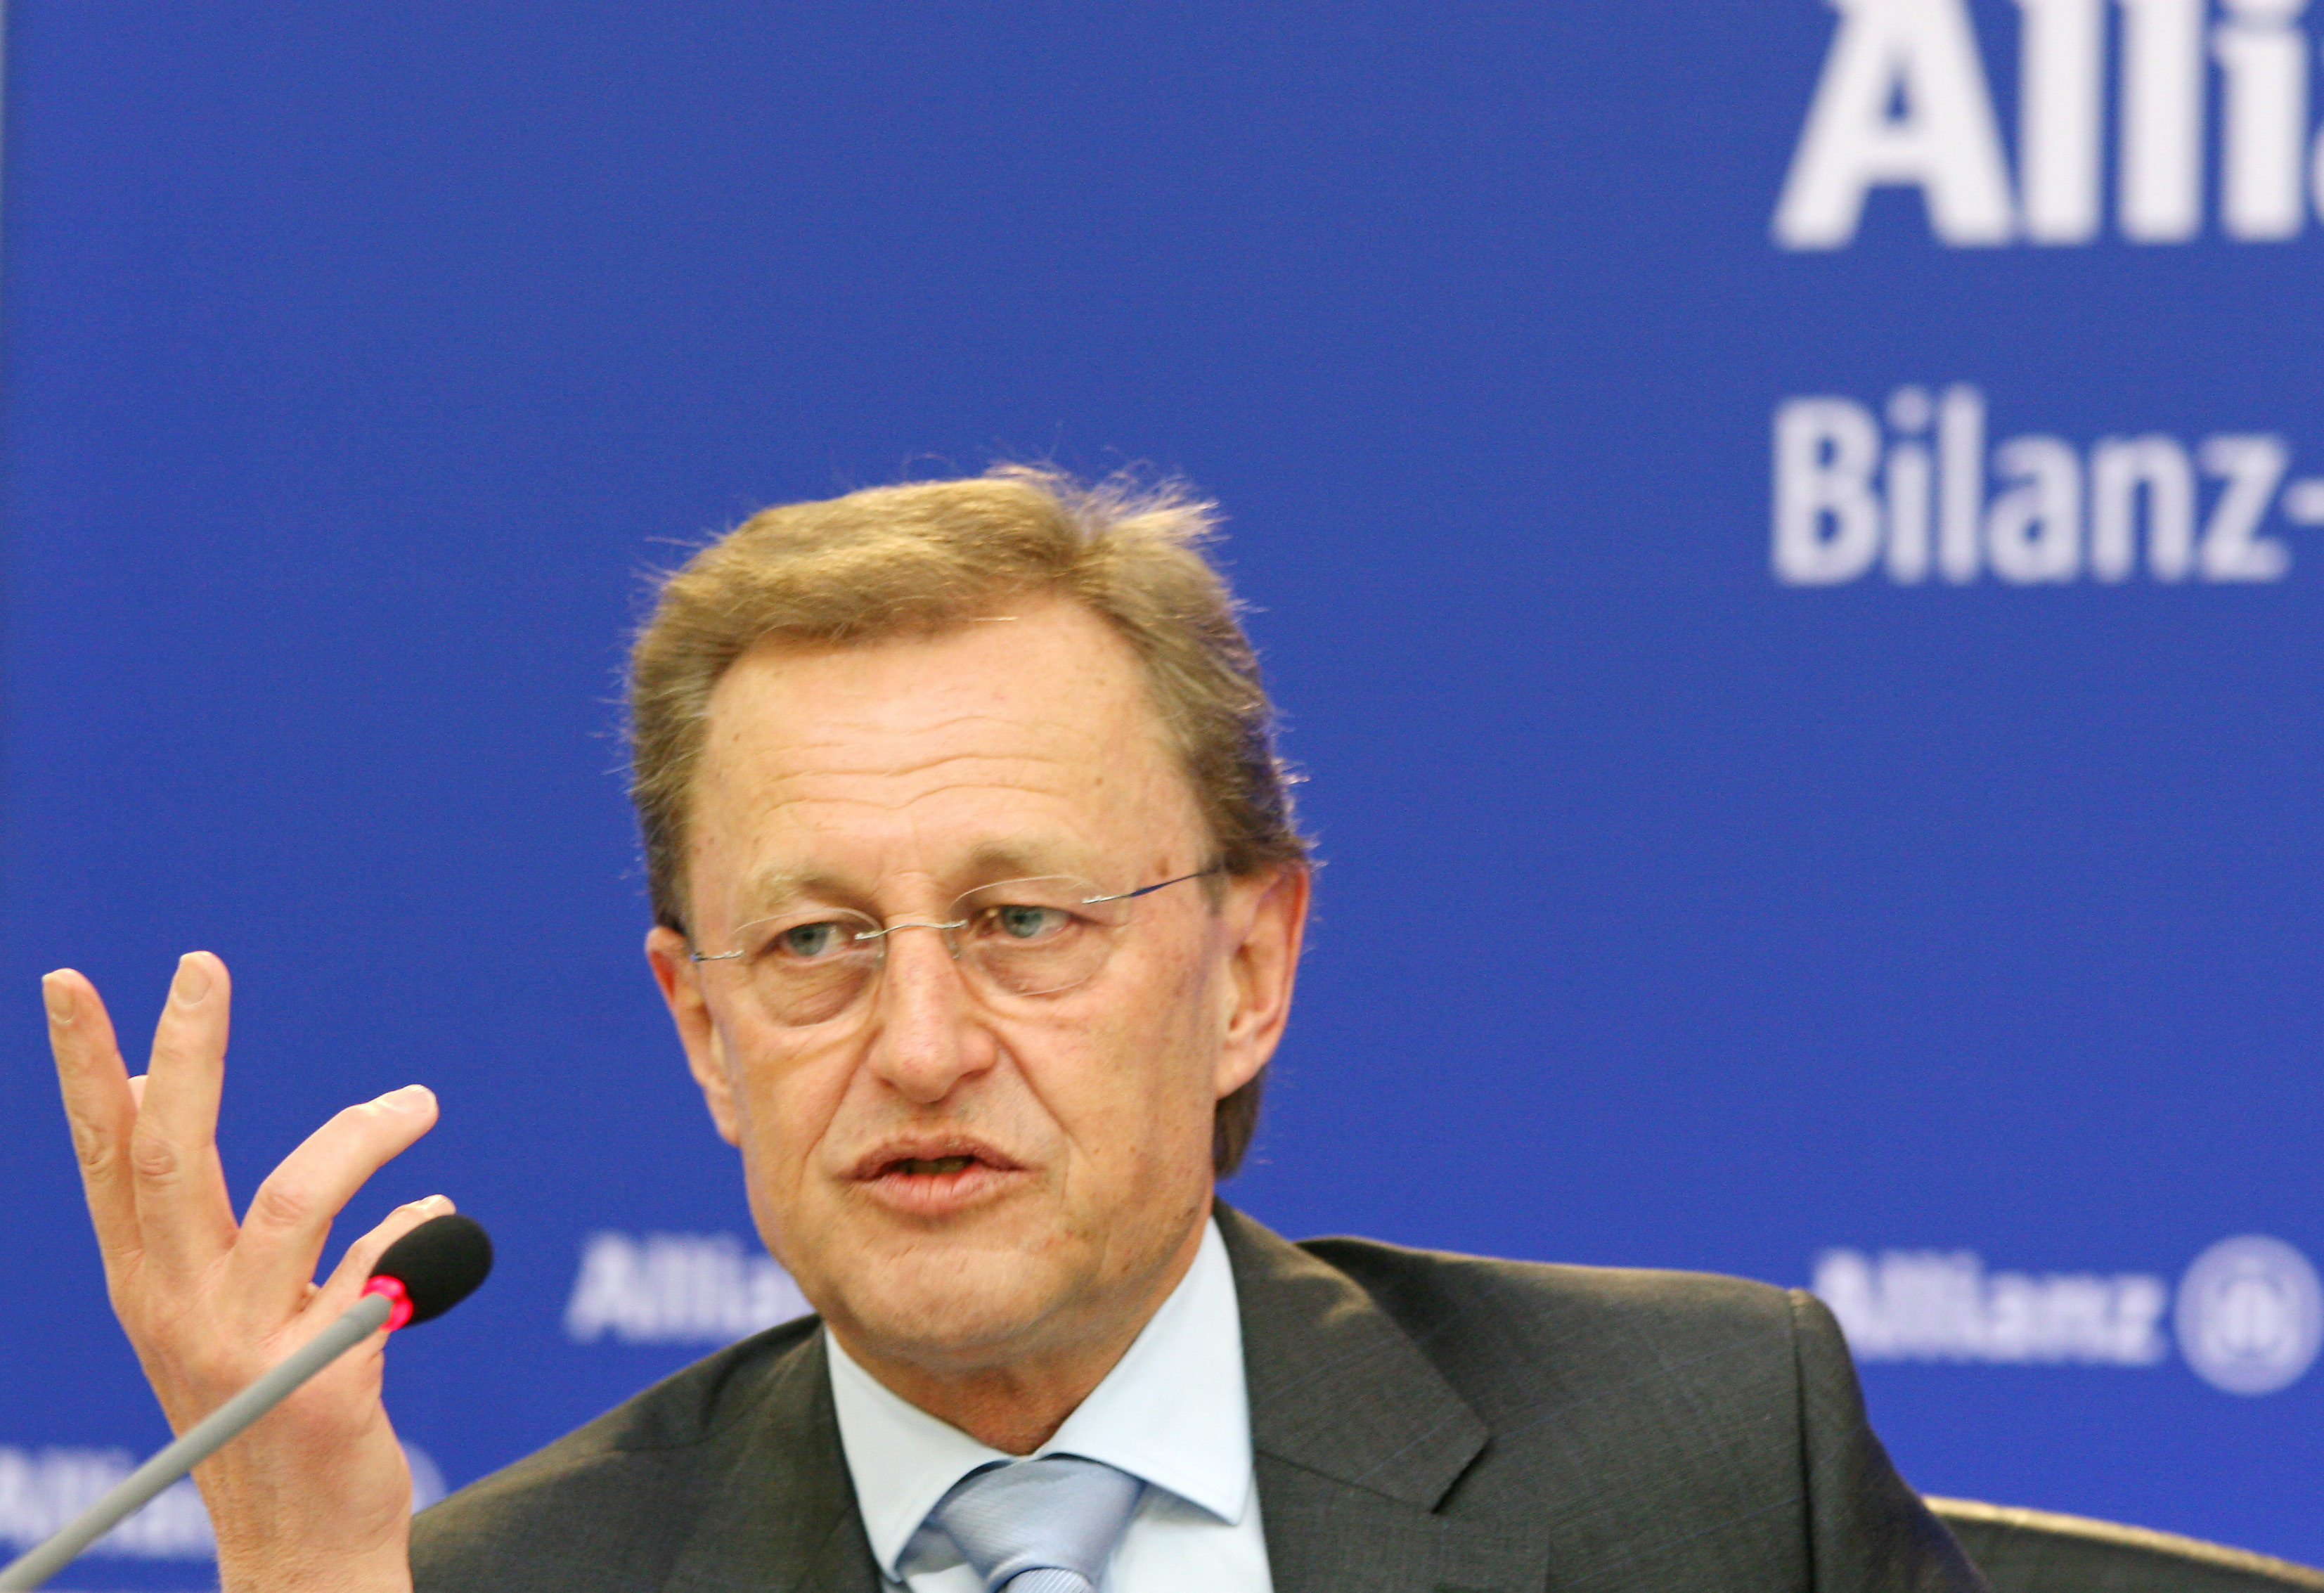 Allianz SE board member Helmut Perlet